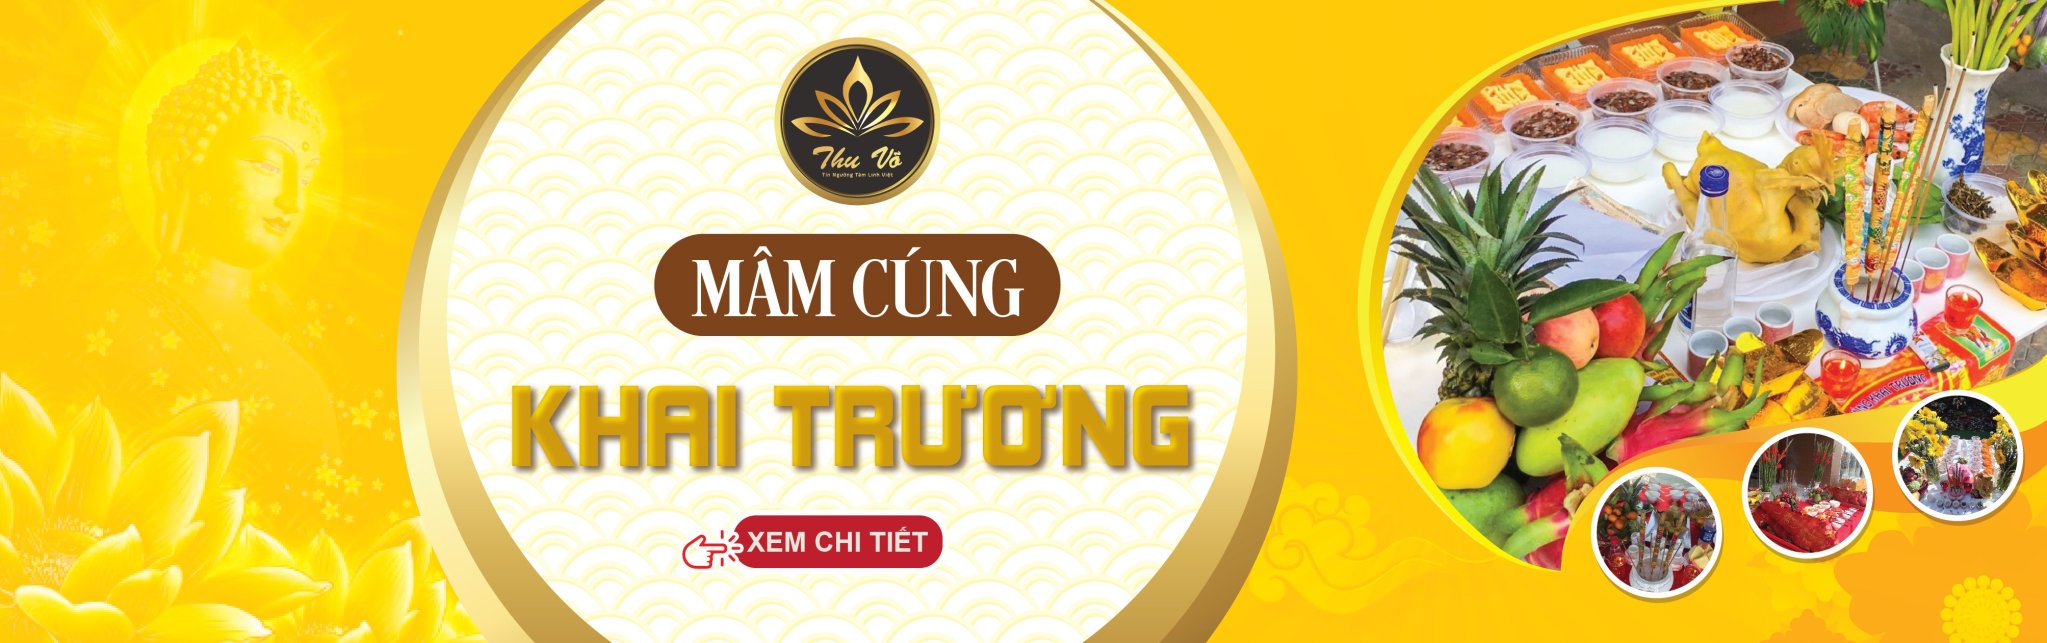 Mam Cung Khai Truong Banner